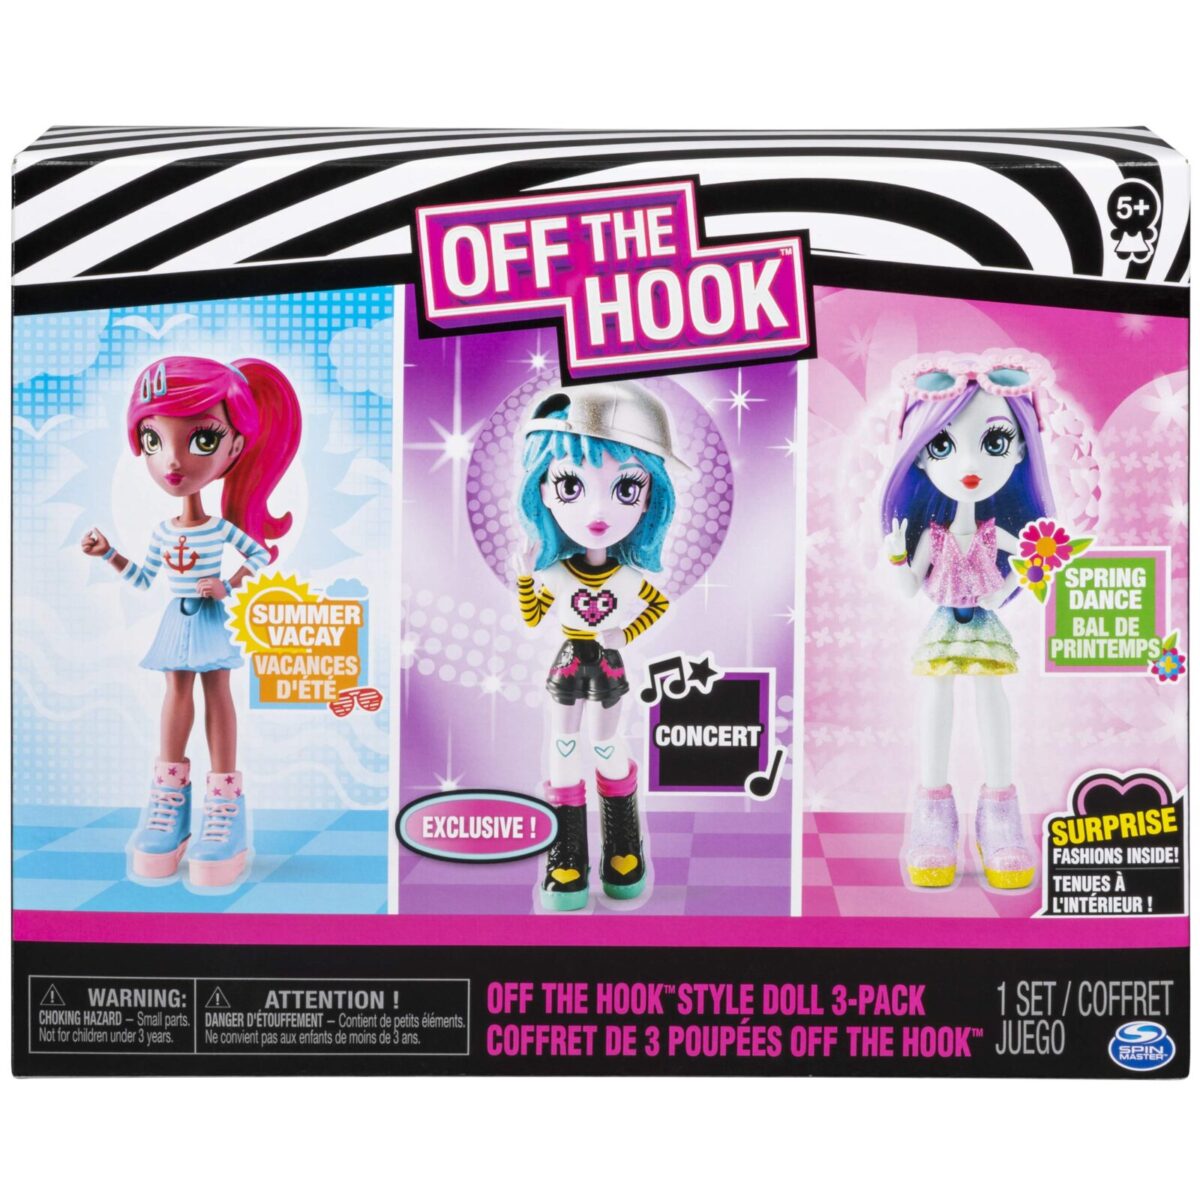 Набор 3-в-1 "Off the Hook Style Doll 3-Pack 6052021" в коробке (оригинал). 1